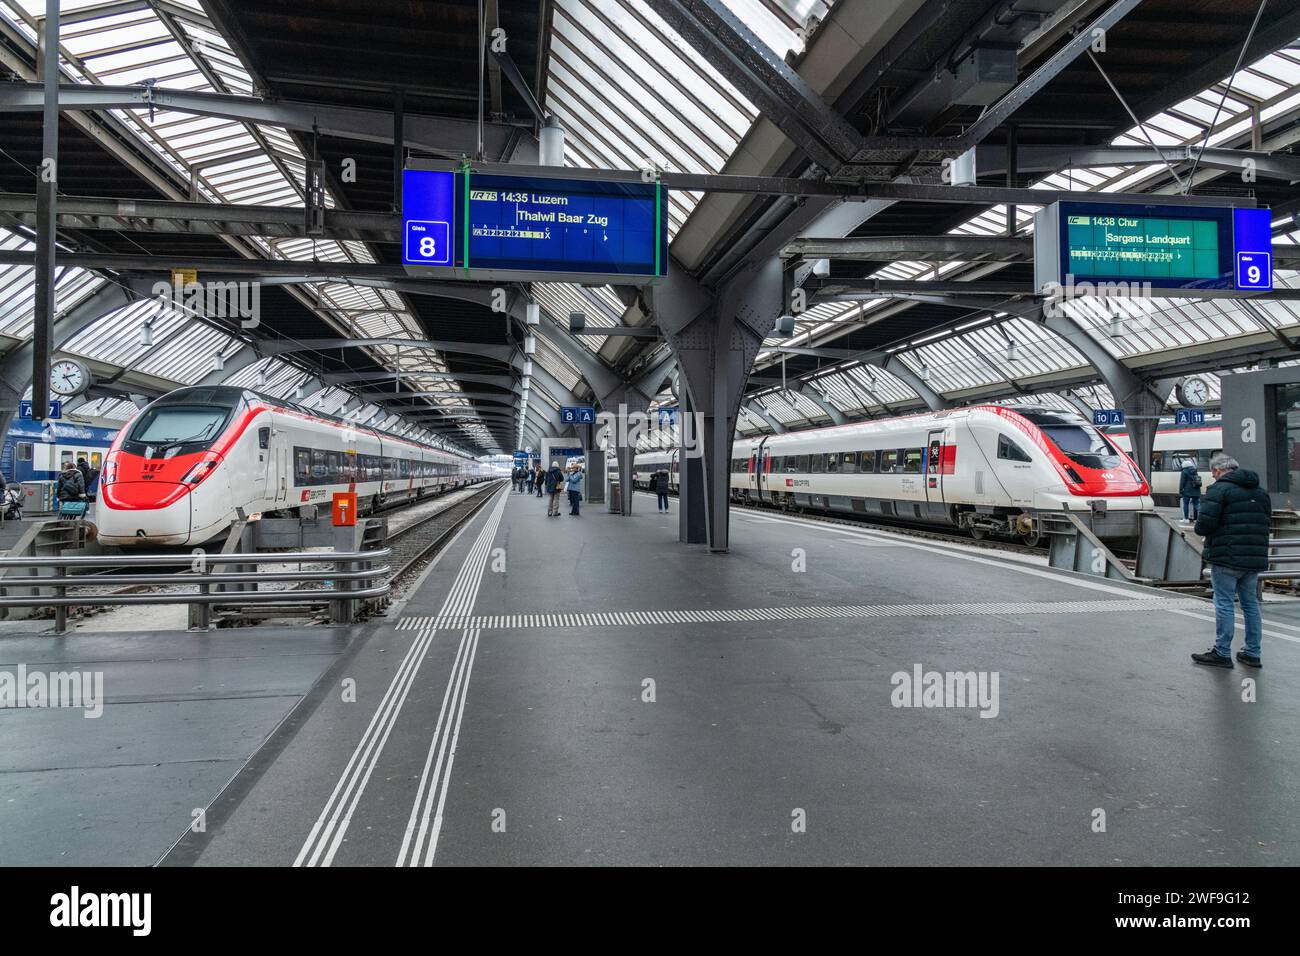 A train arrived at a platform due to depart at Zurich Hauptbahnhof train station in Zurich, Switzerland Stock Photo